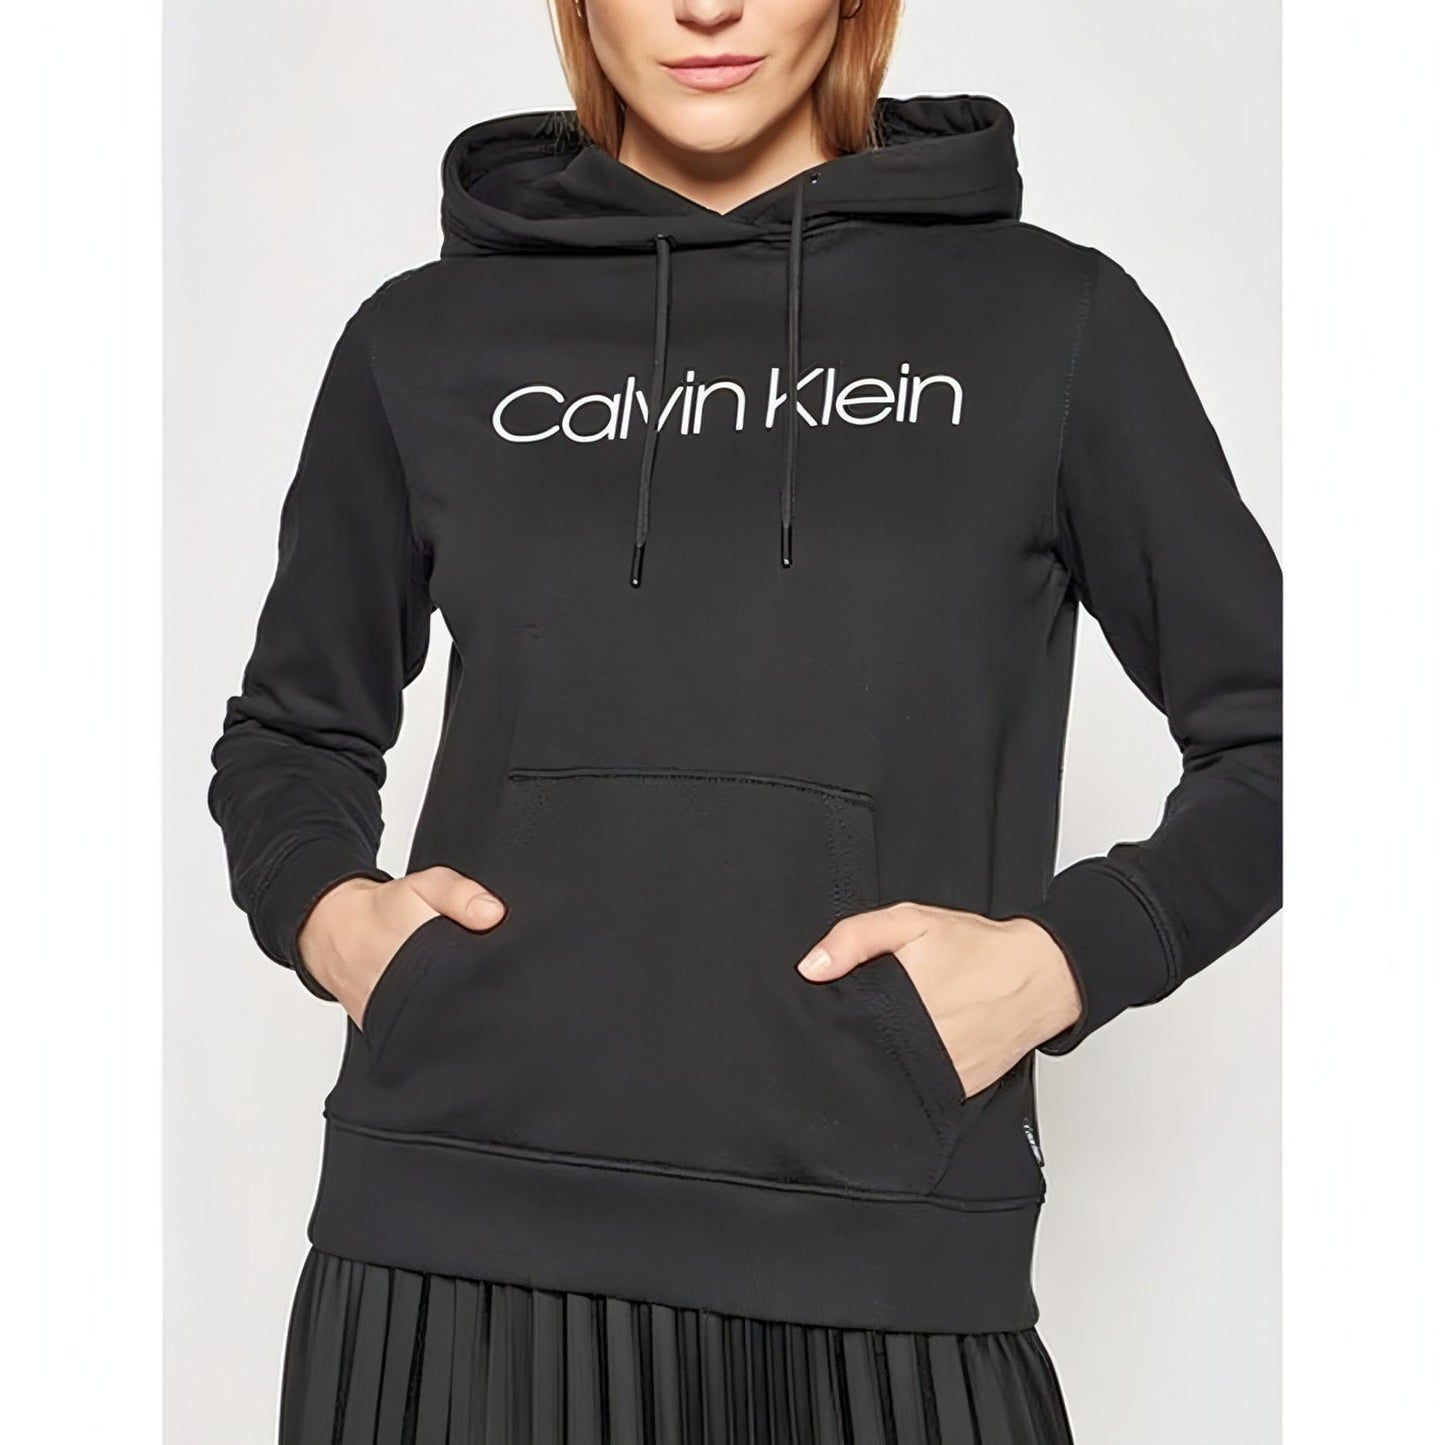 CALVIN KLEIN moteriškas juodas džemperis